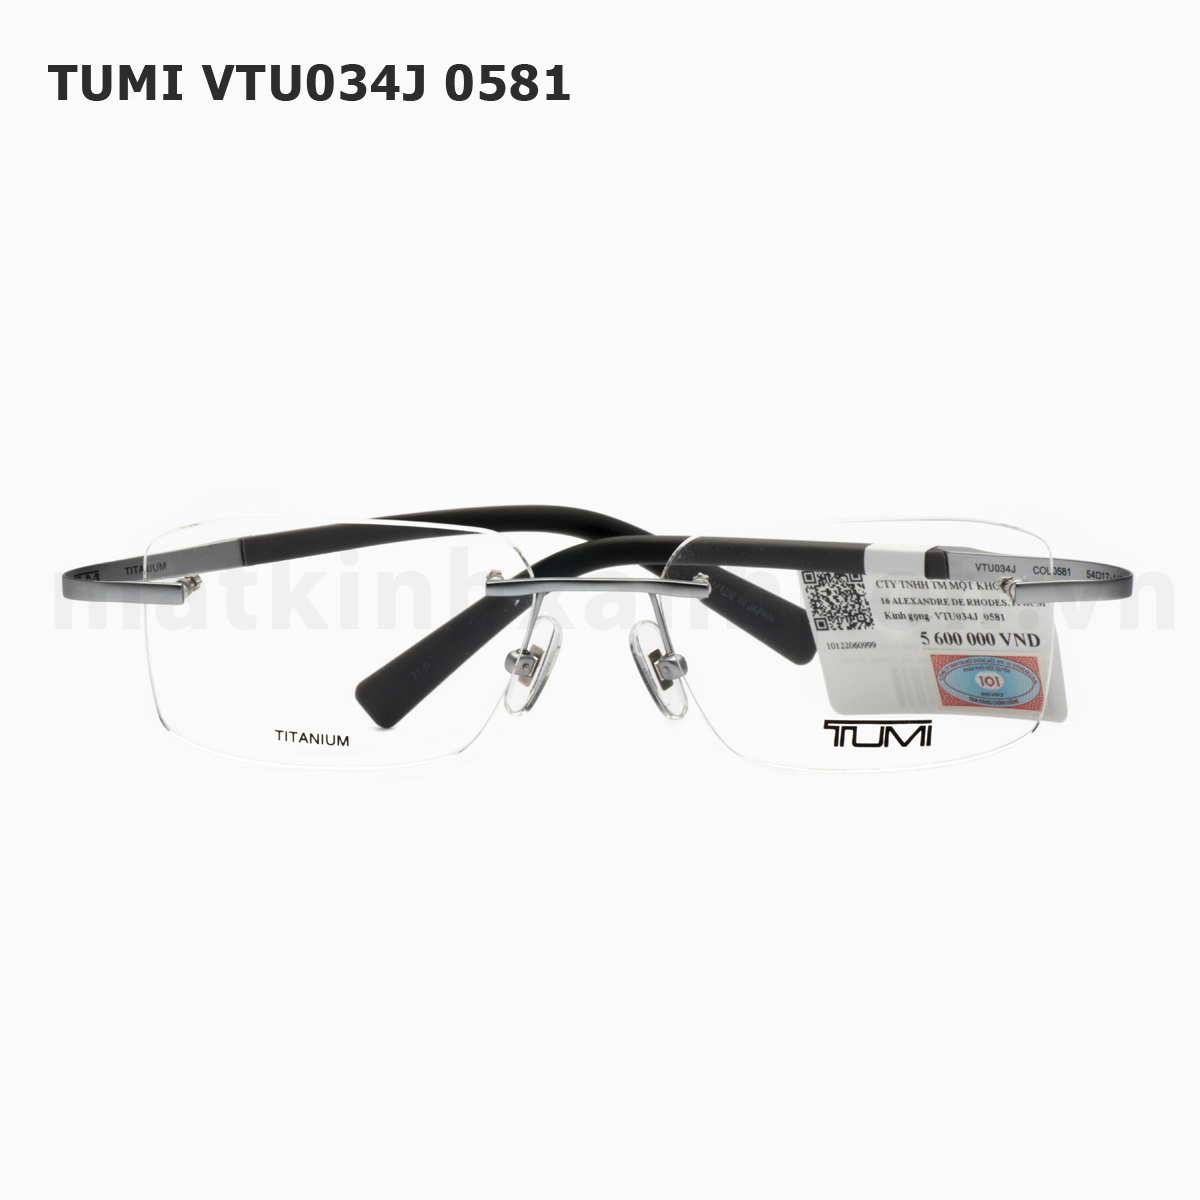 TUMI VTU034J 0581